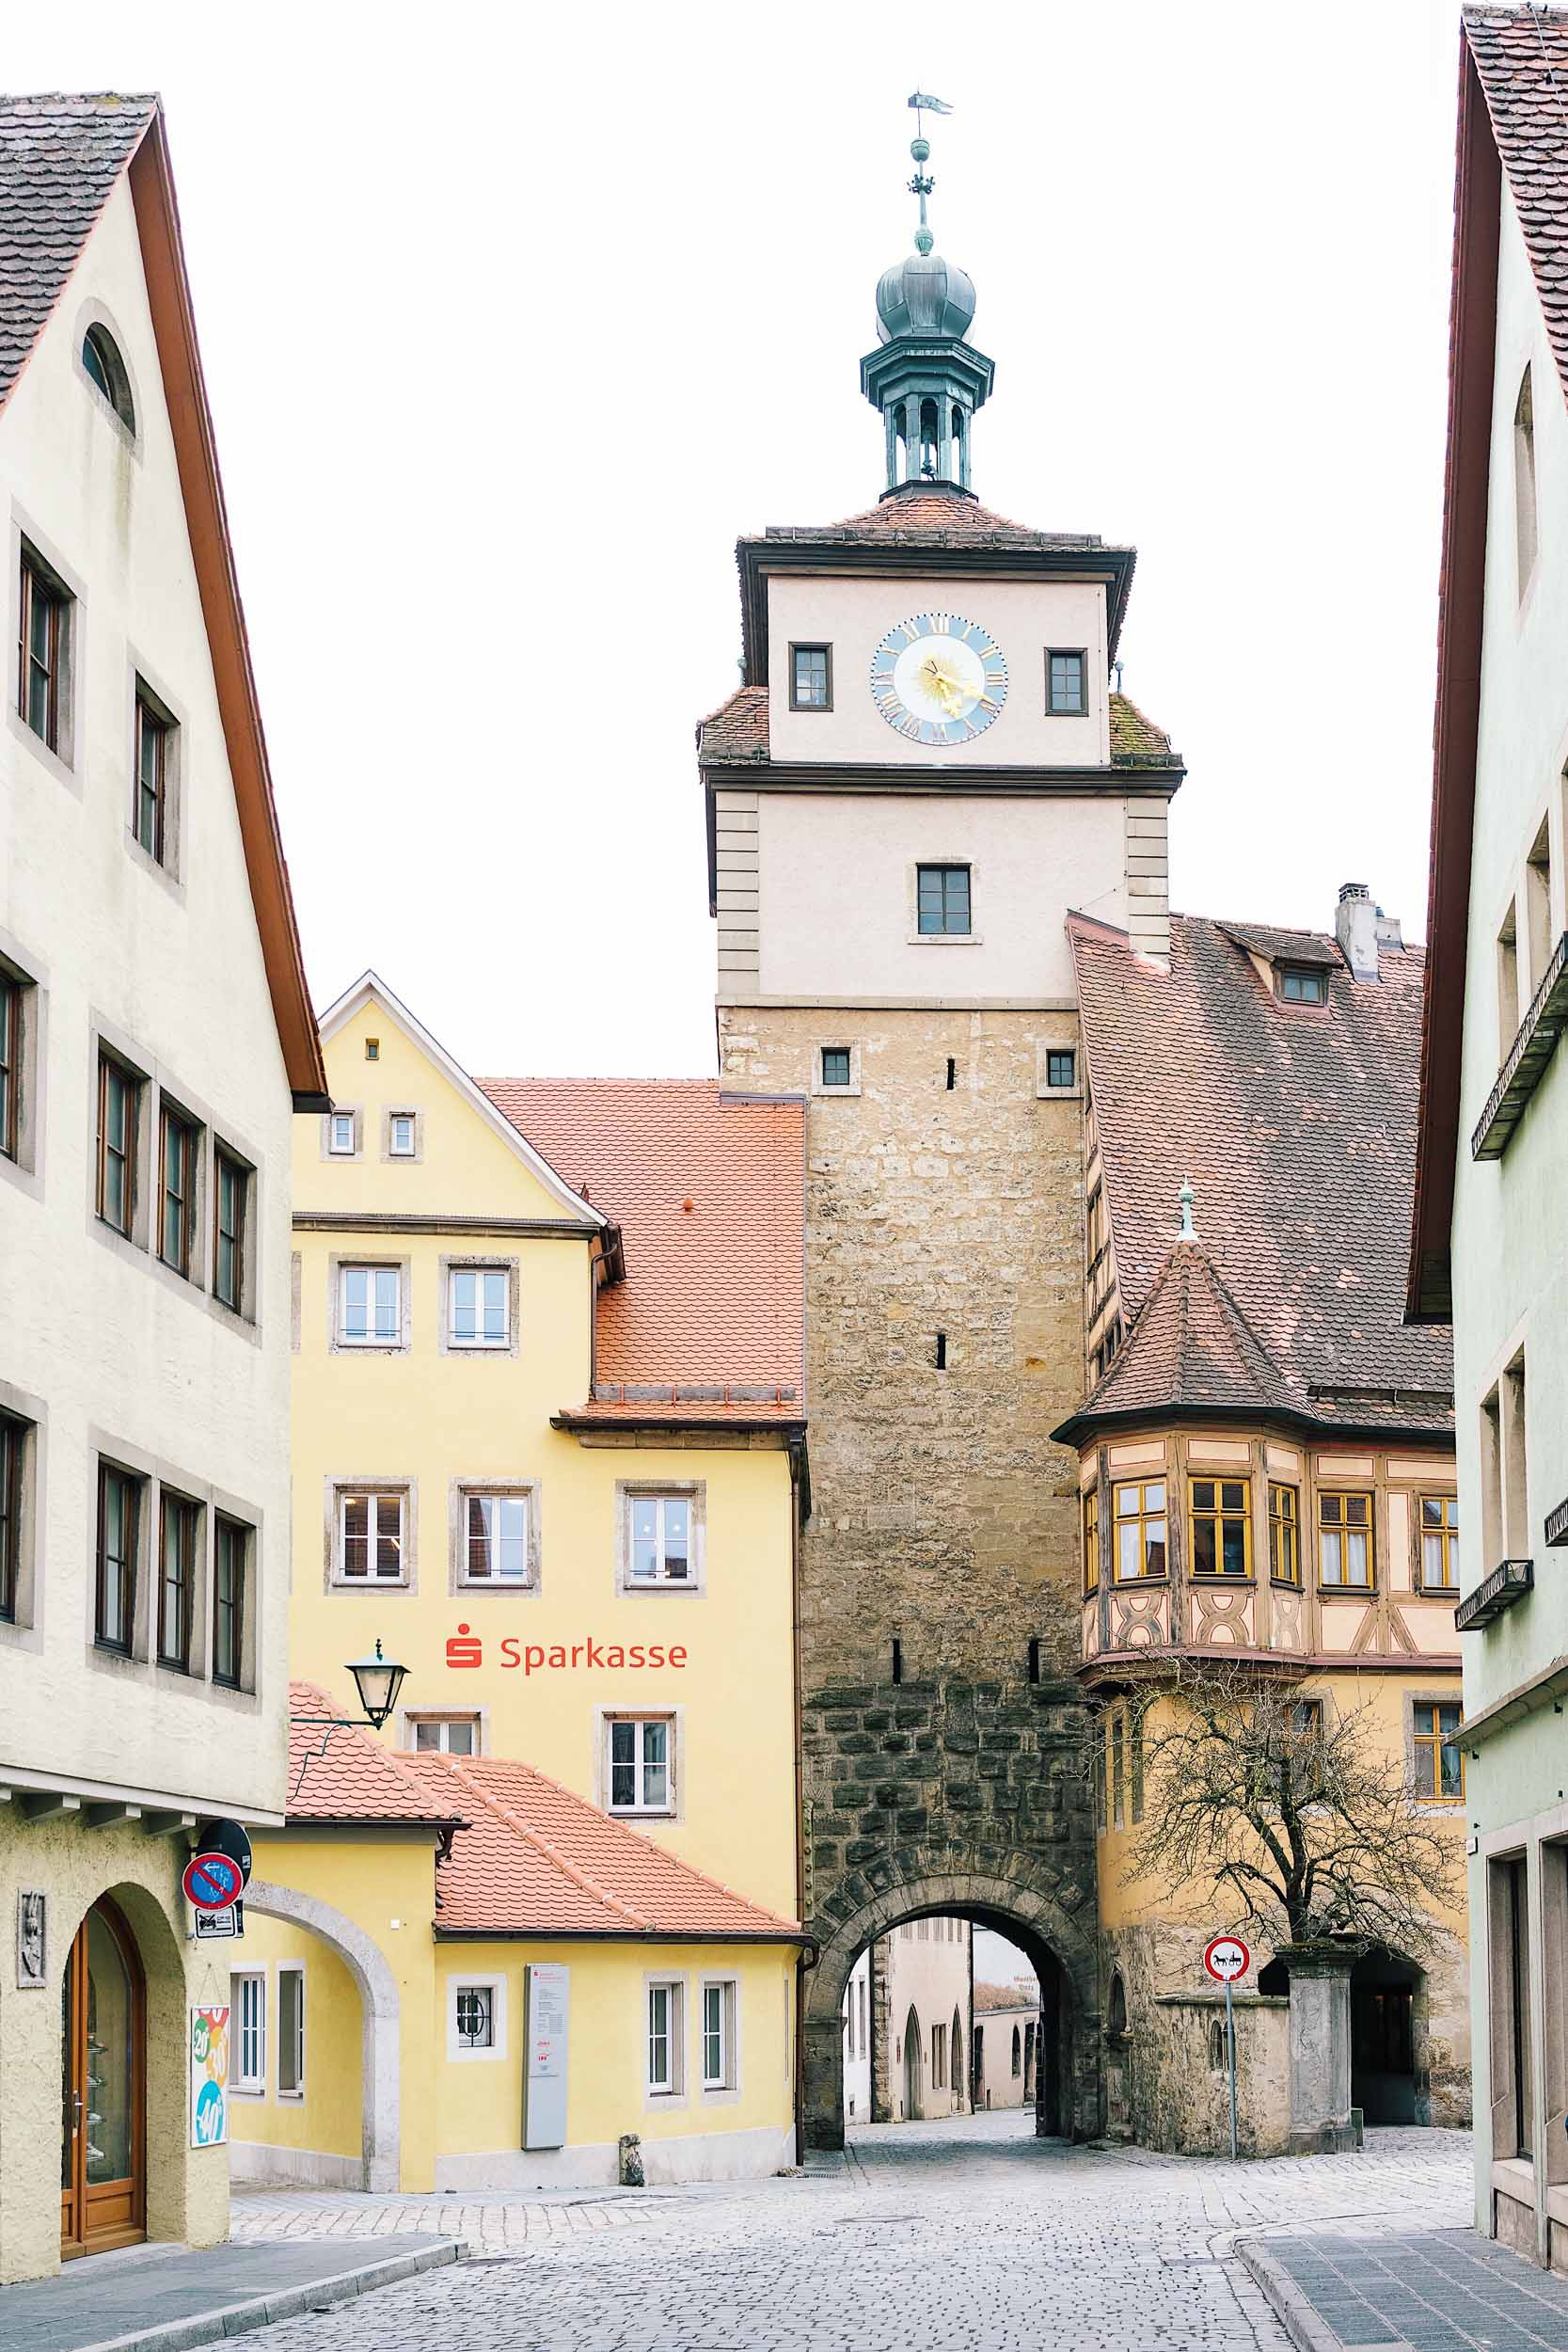 Europe's most photogenic village: Rothenburg